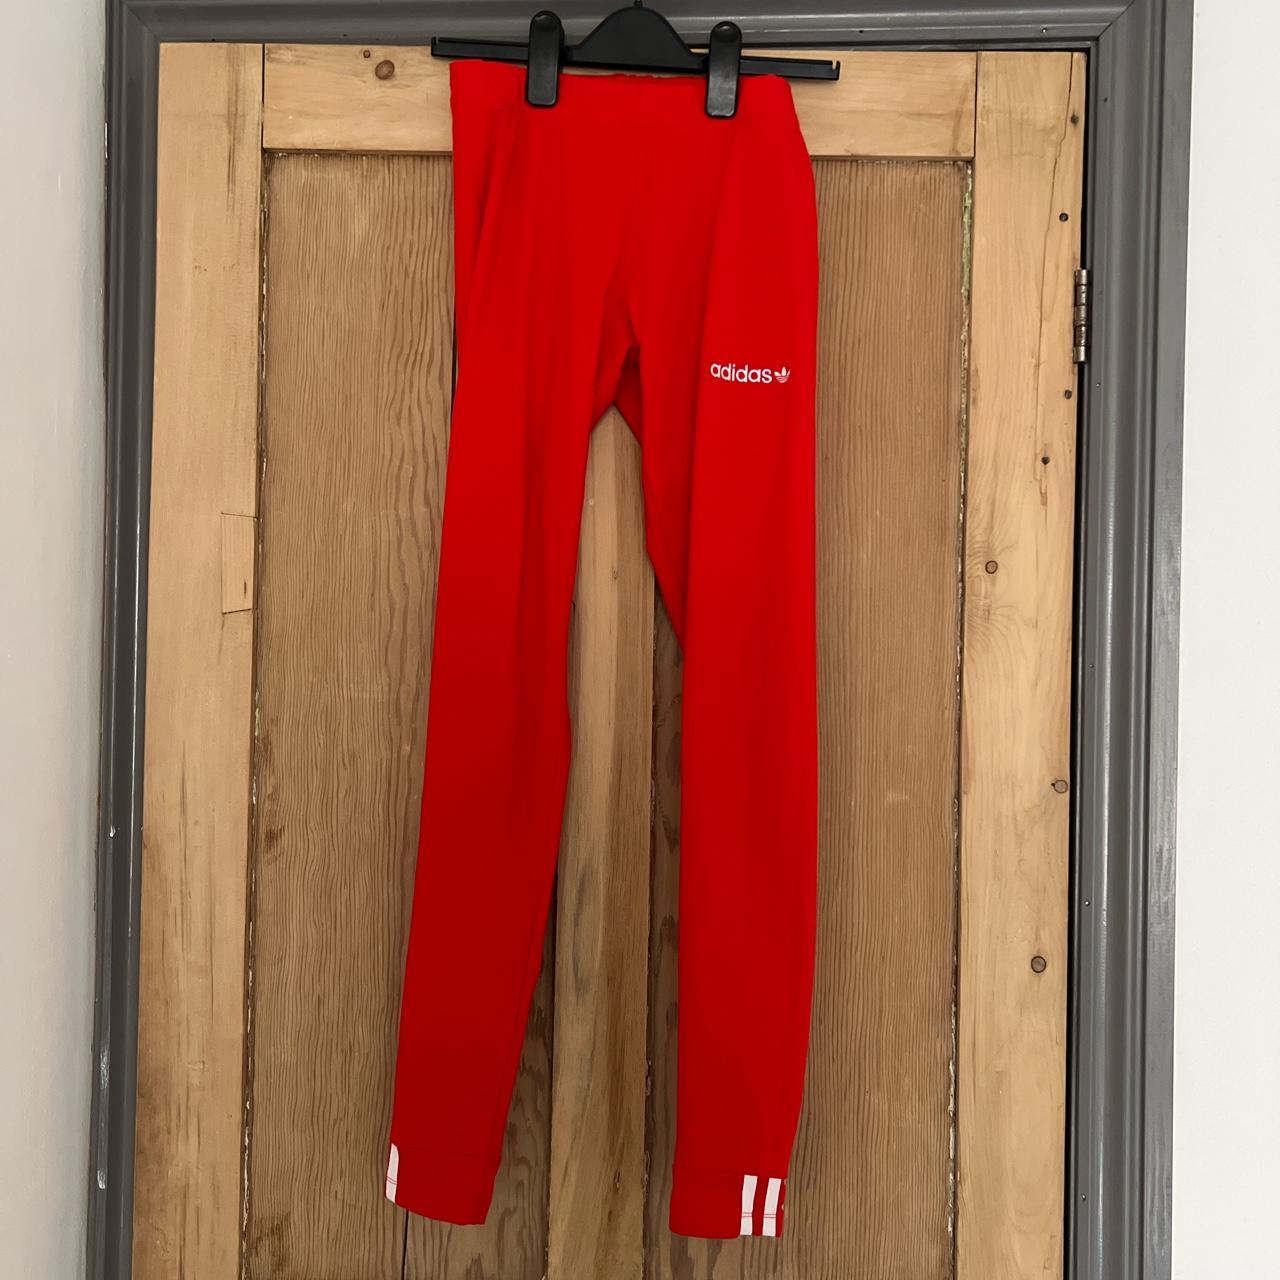 Adidas red leggings - Depop